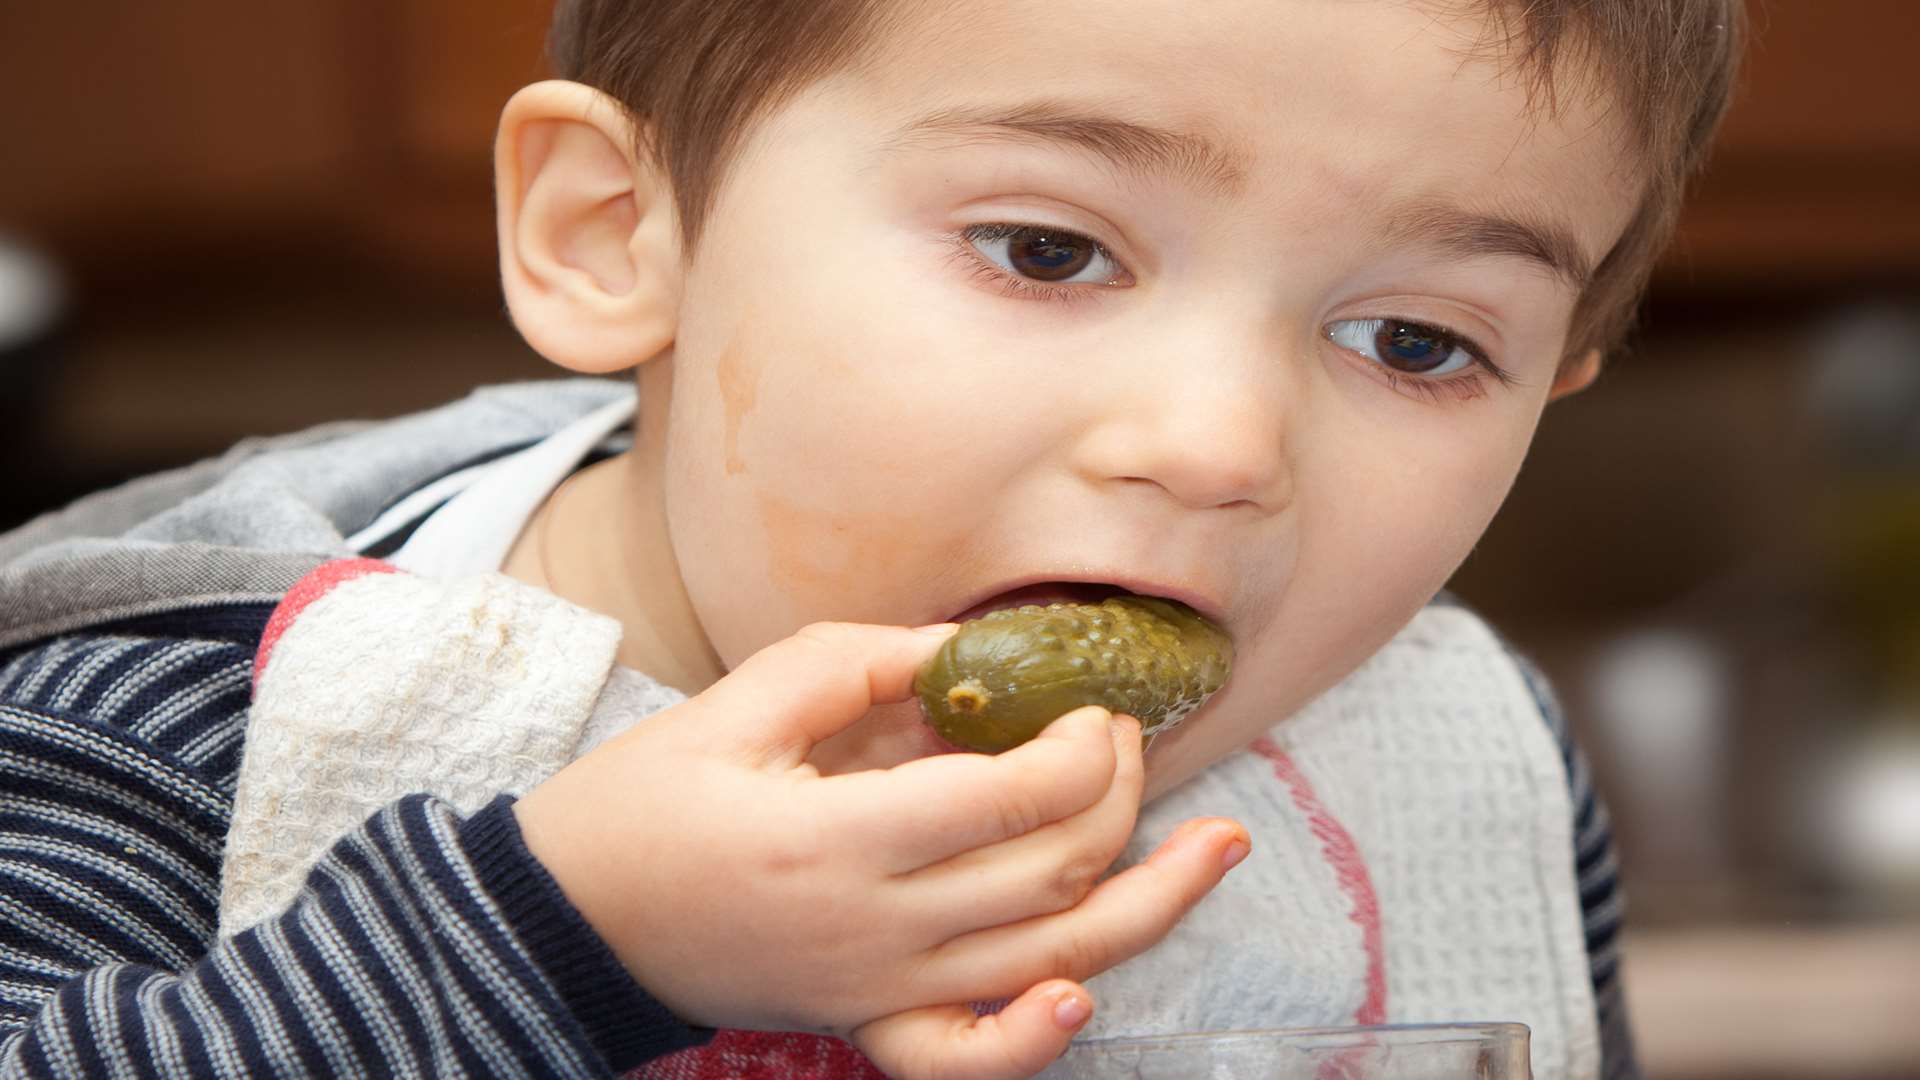 A varied diet will help children develop